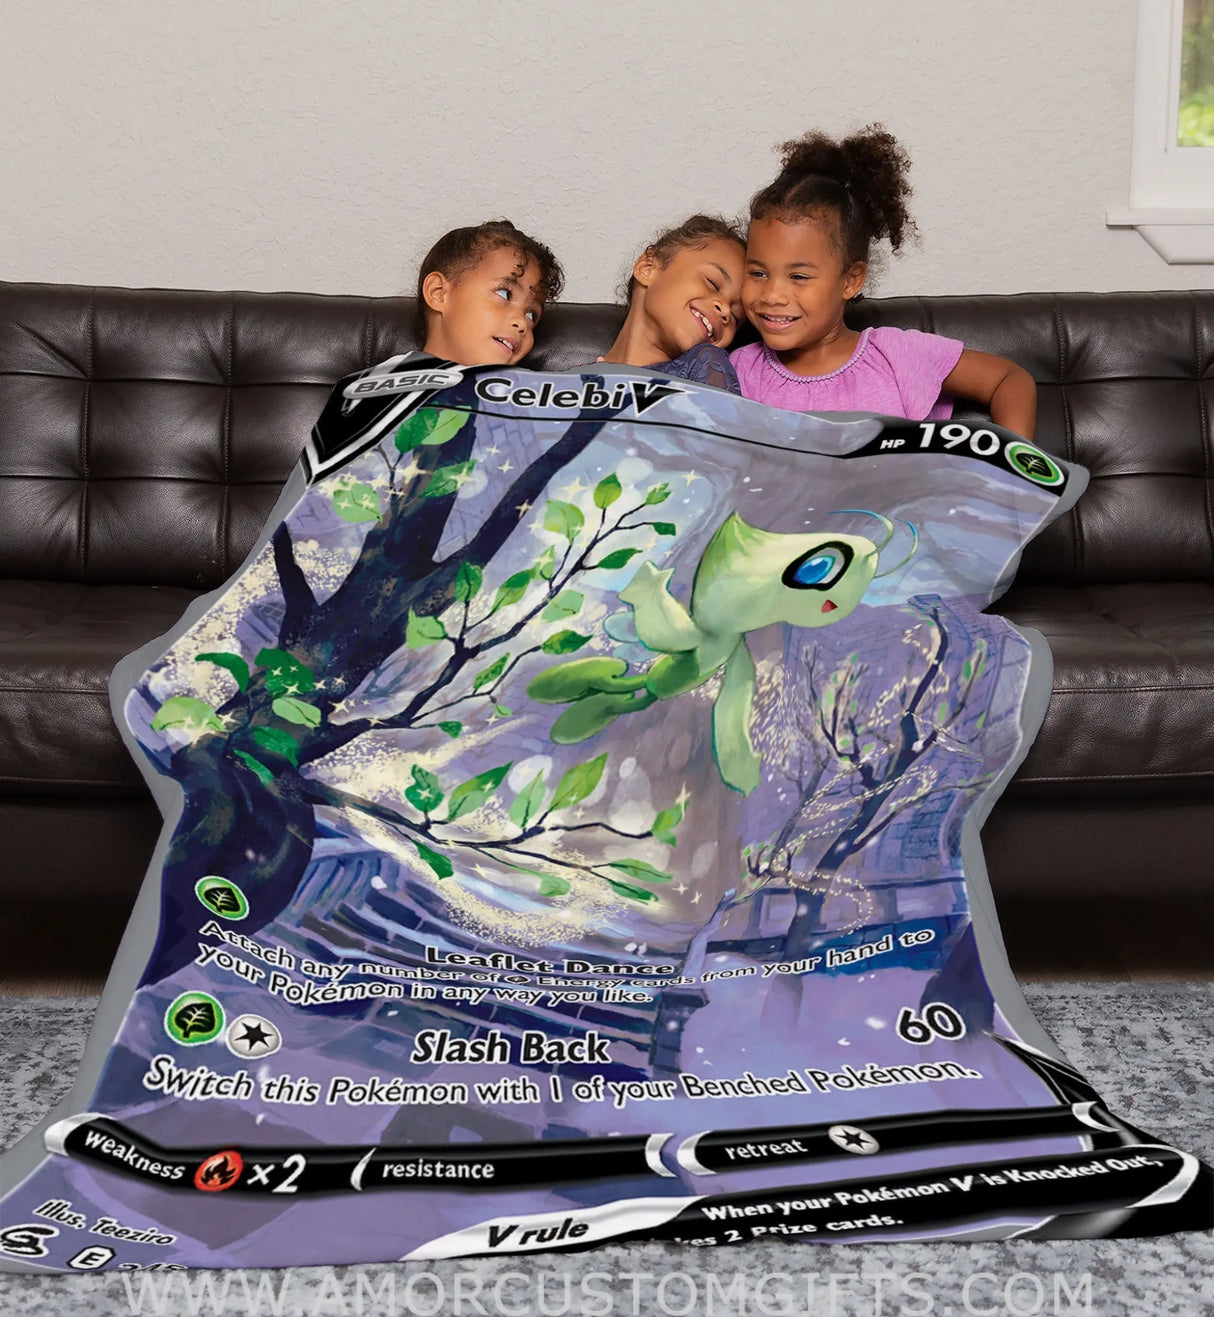 Celebi V Sword & Shield Series Blanket